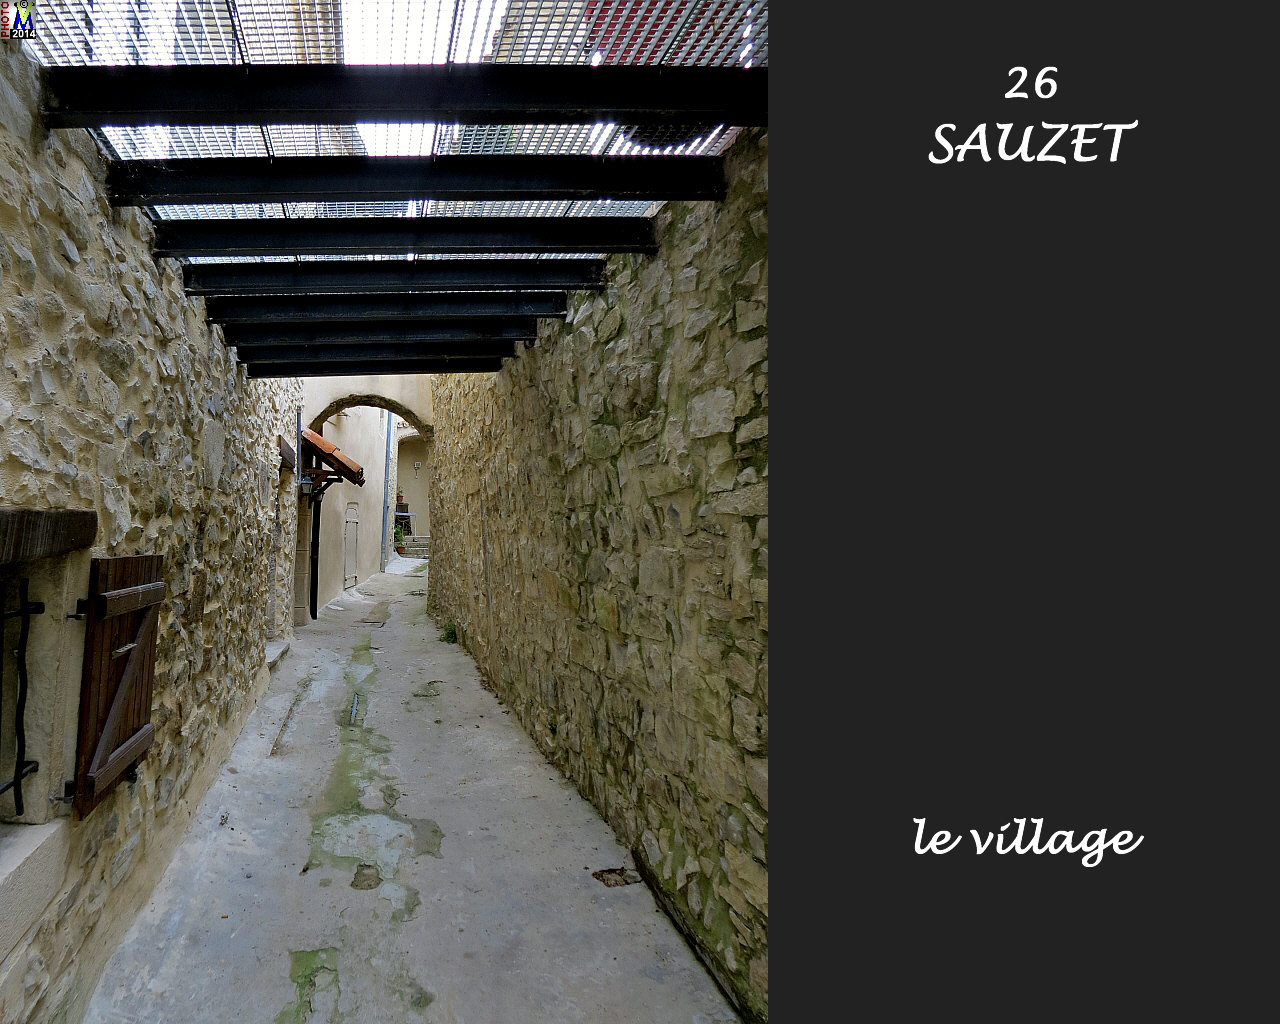 26SAUZET_village_132.jpg